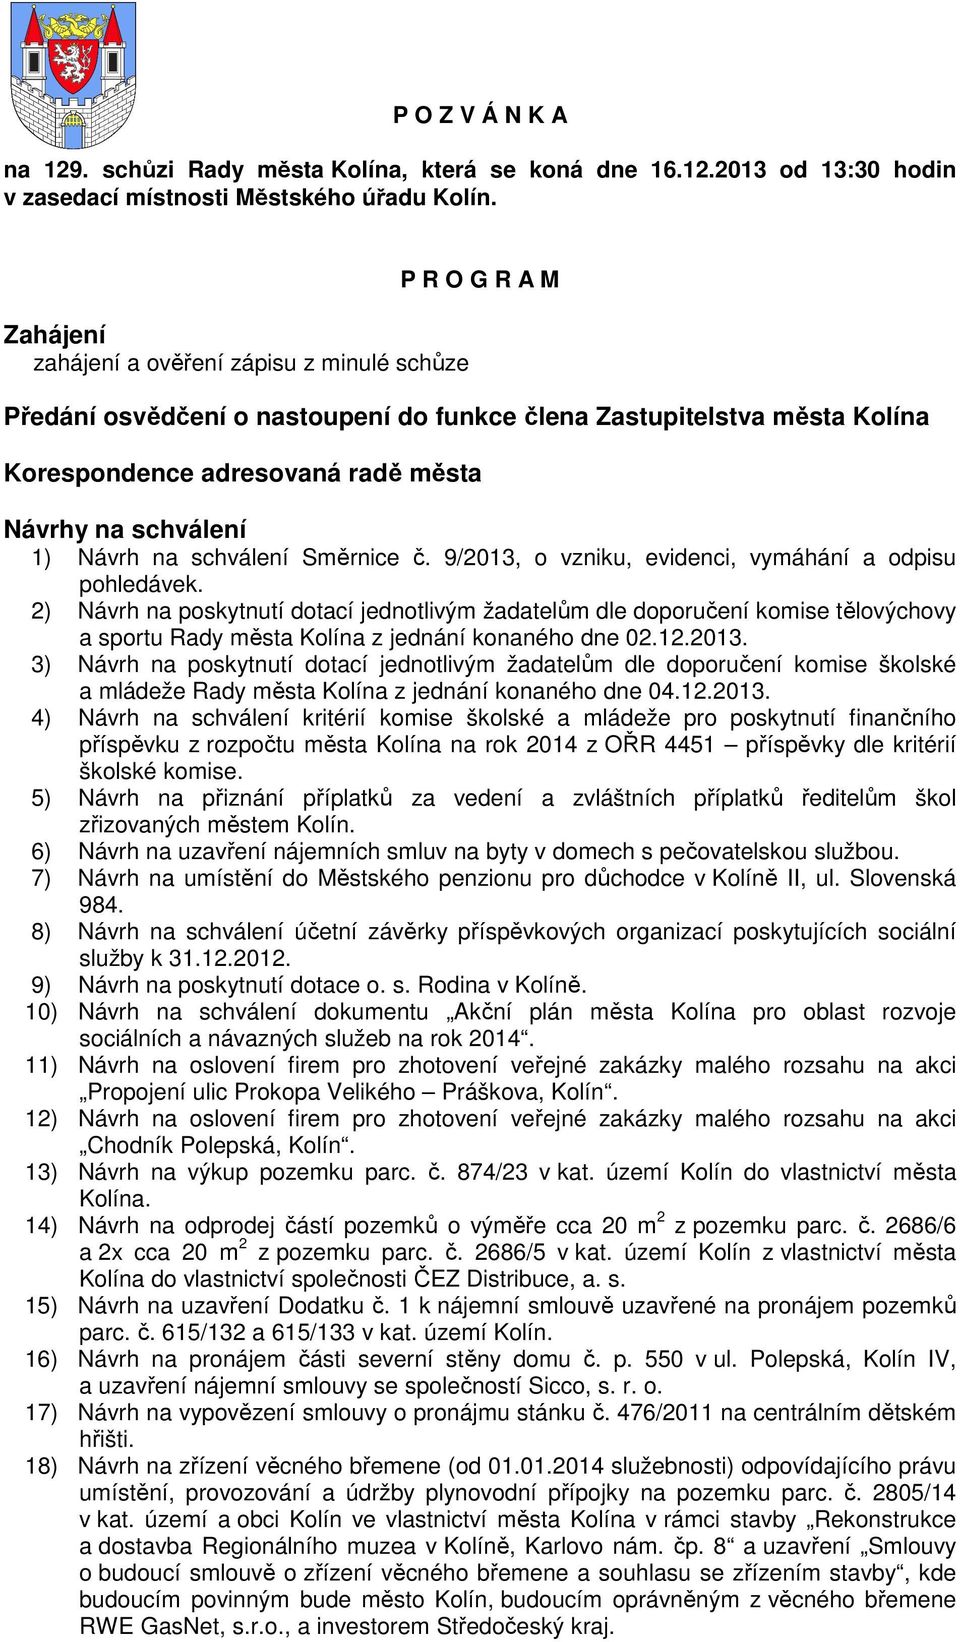 Návrh na schválení Směrnice č. 9/2013, o vzniku, evidenci, vymáhání a odpisu pohledávek.